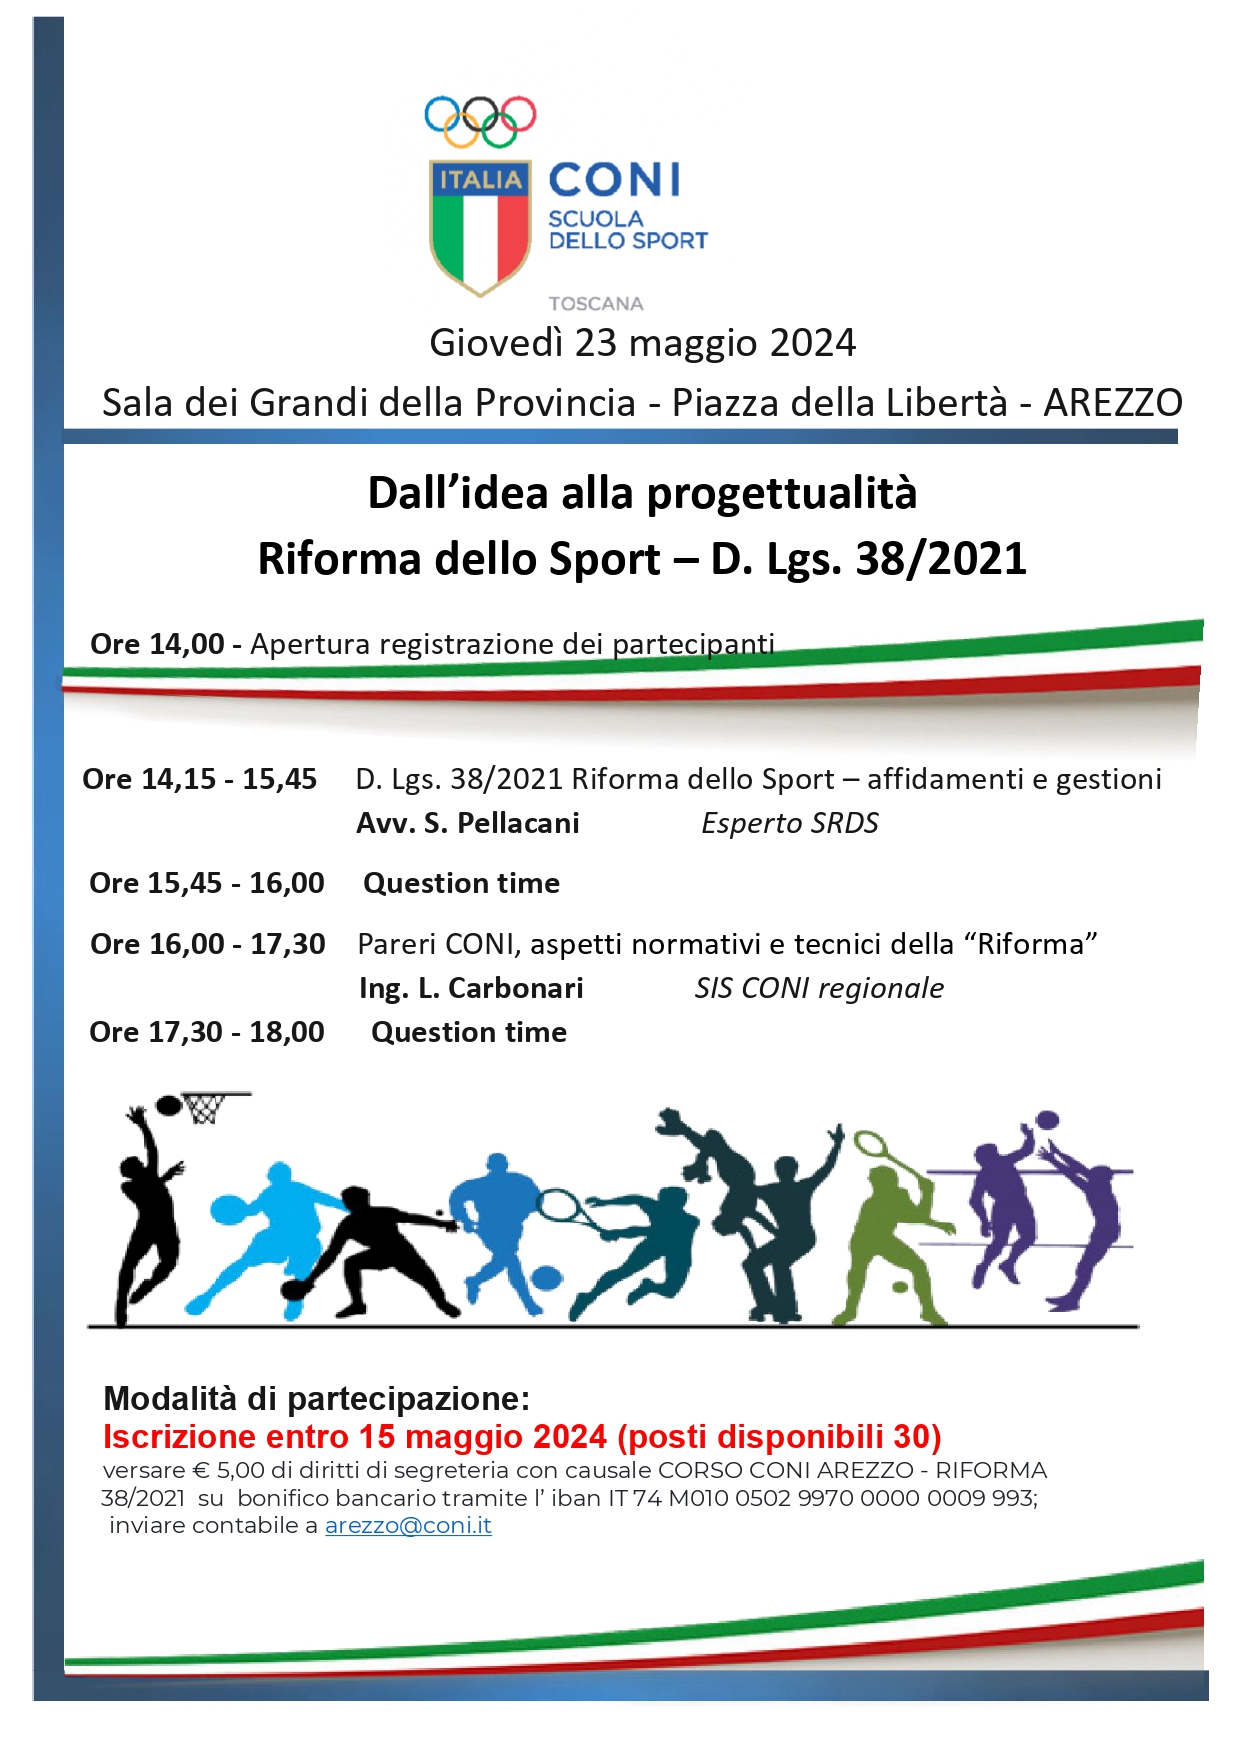 DALL' IDEA ALLA PROGETTUALITA' - Riforma dello Sport - D. Lgs 38/2021 - Arezzo